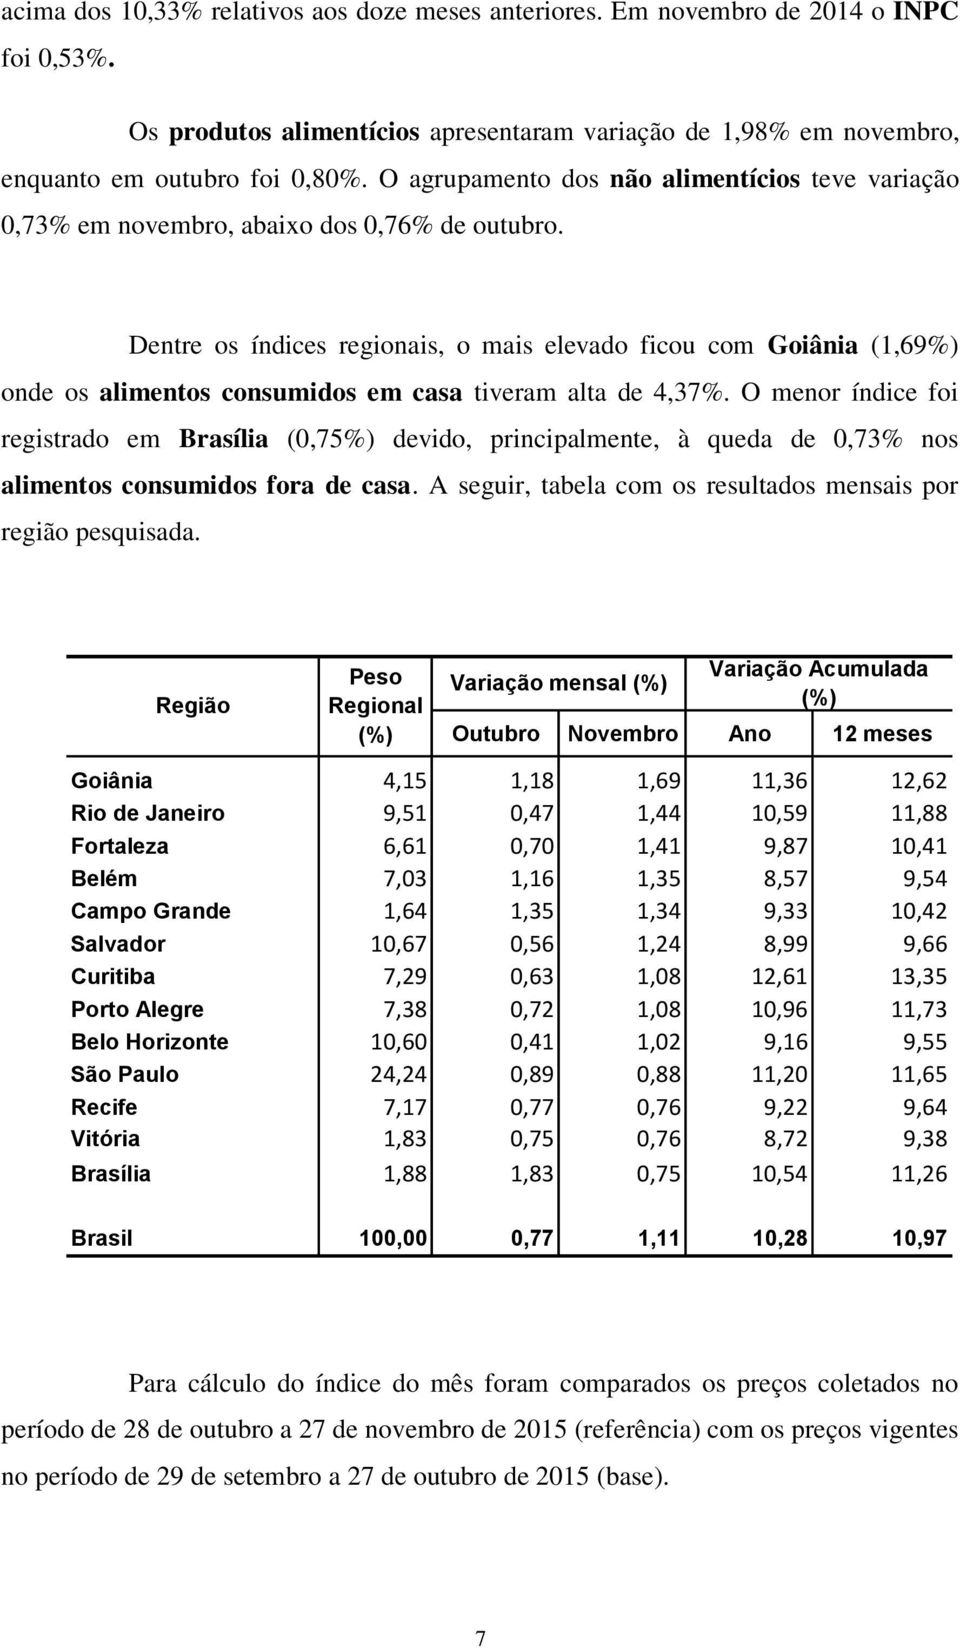 Dentre os índices regionais, o mais elevado ficou com Goiânia (1,69%) onde os alimentos consumidos em casa tiveram alta de 4,37%.